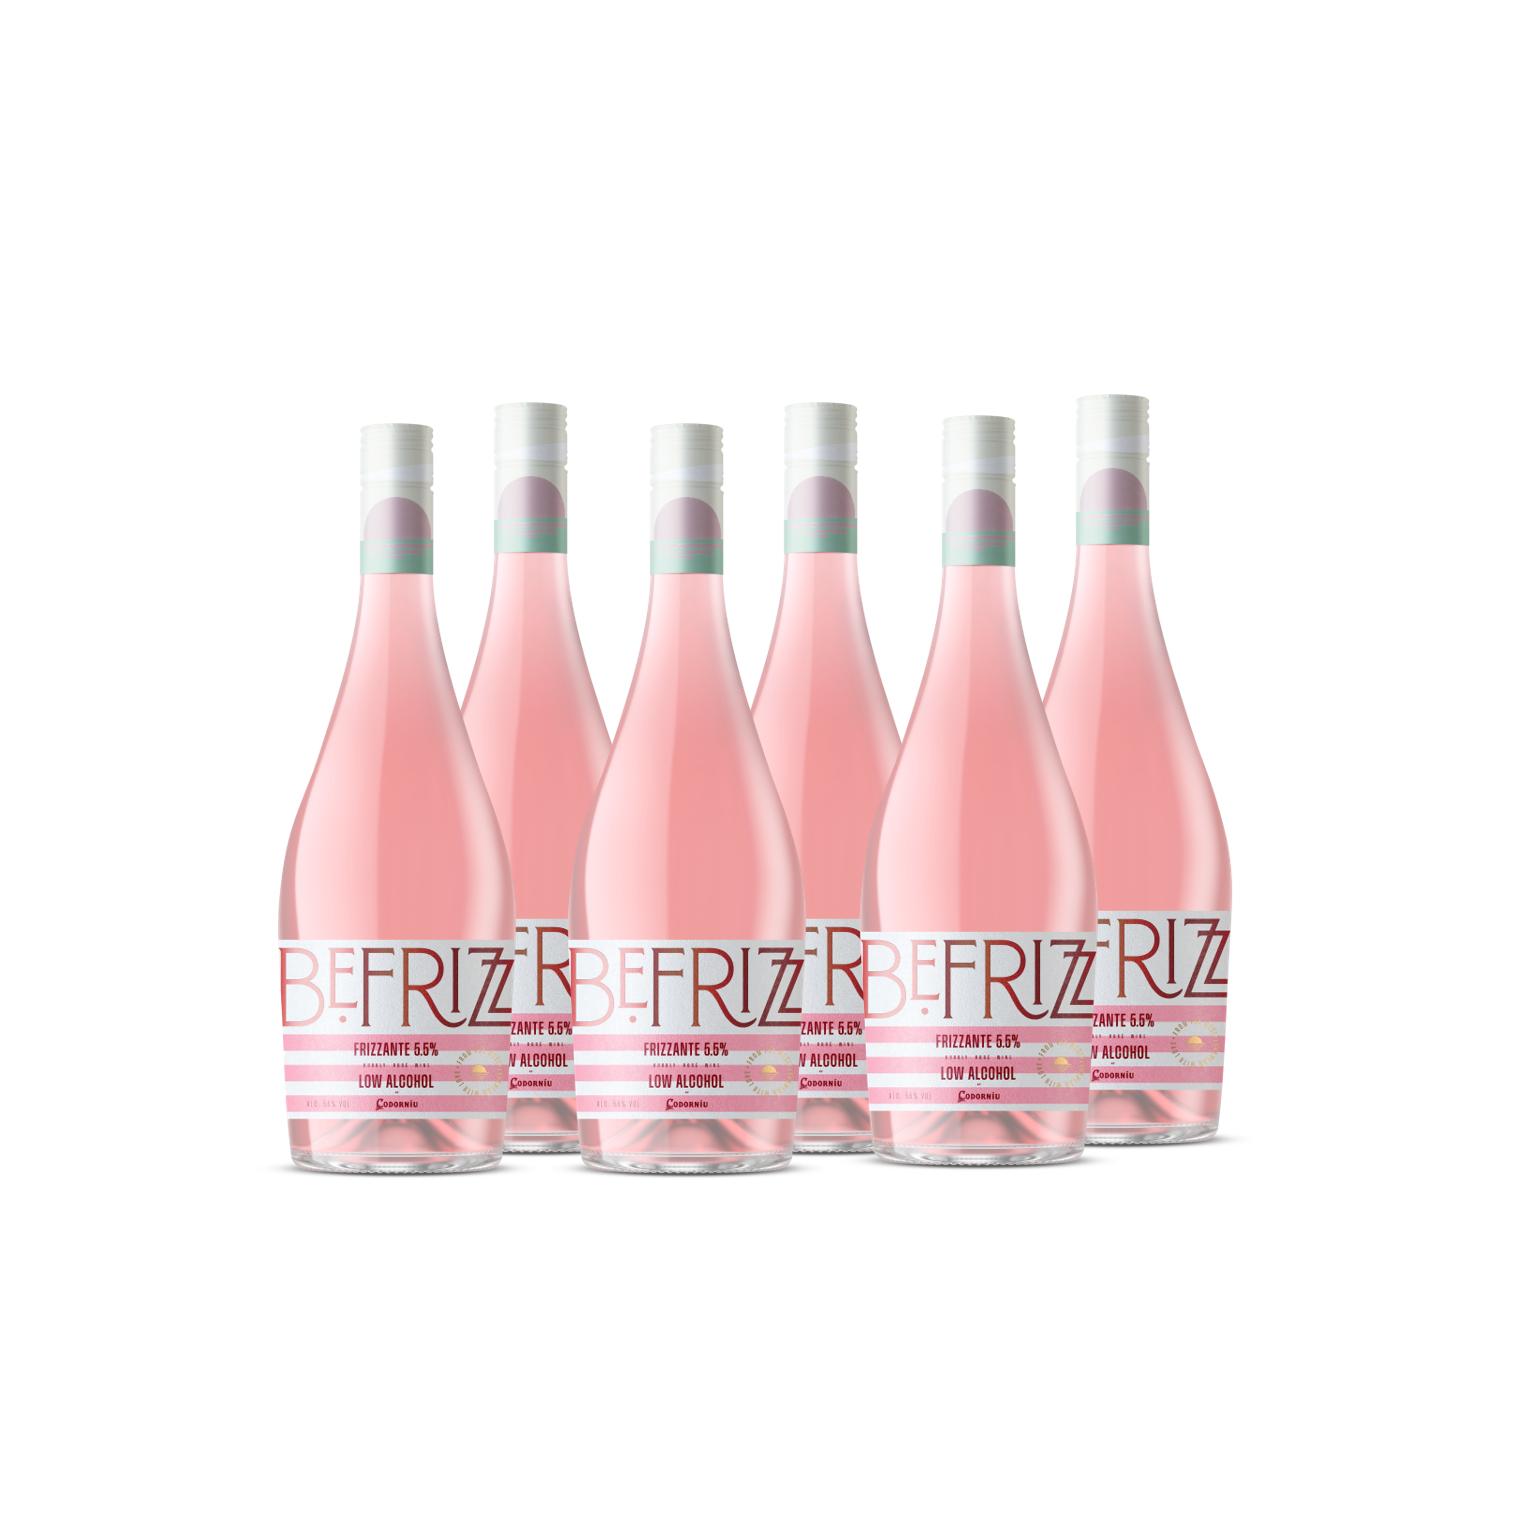 Codorniu - Codorniu BeFrizz Rosado - Vino Frizzante Bajo en Alcohol - Caja 6 botellas 75cl